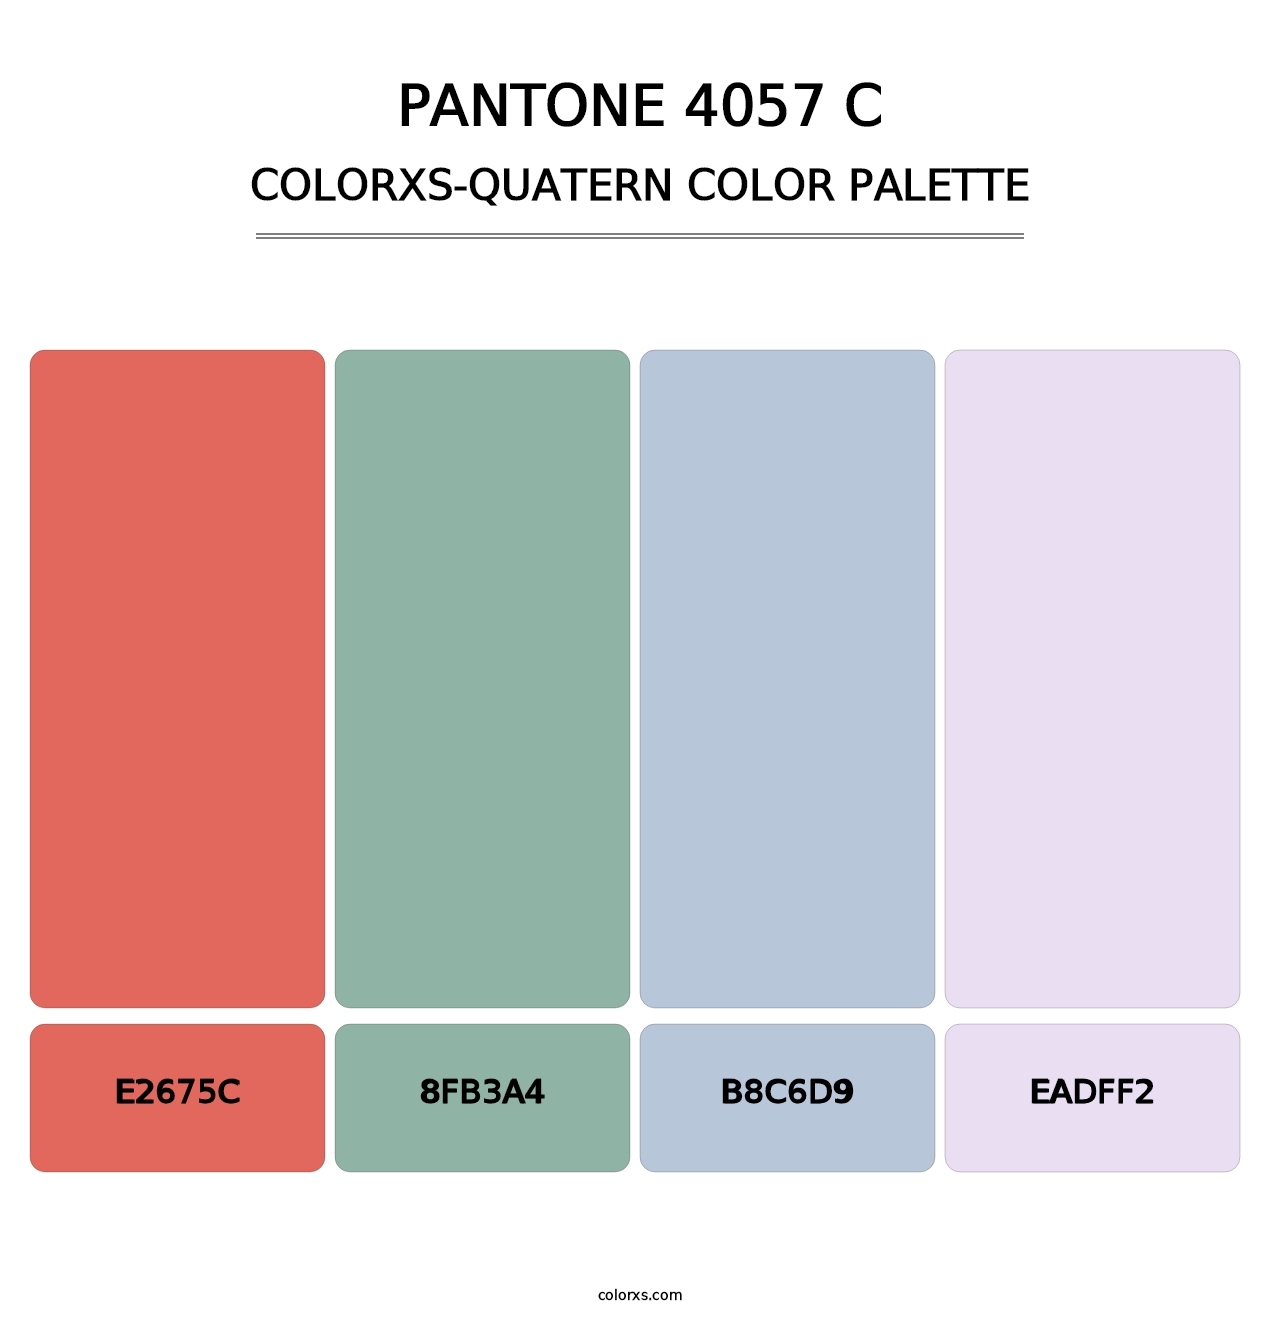 PANTONE 4057 C - Colorxs Quatern Palette